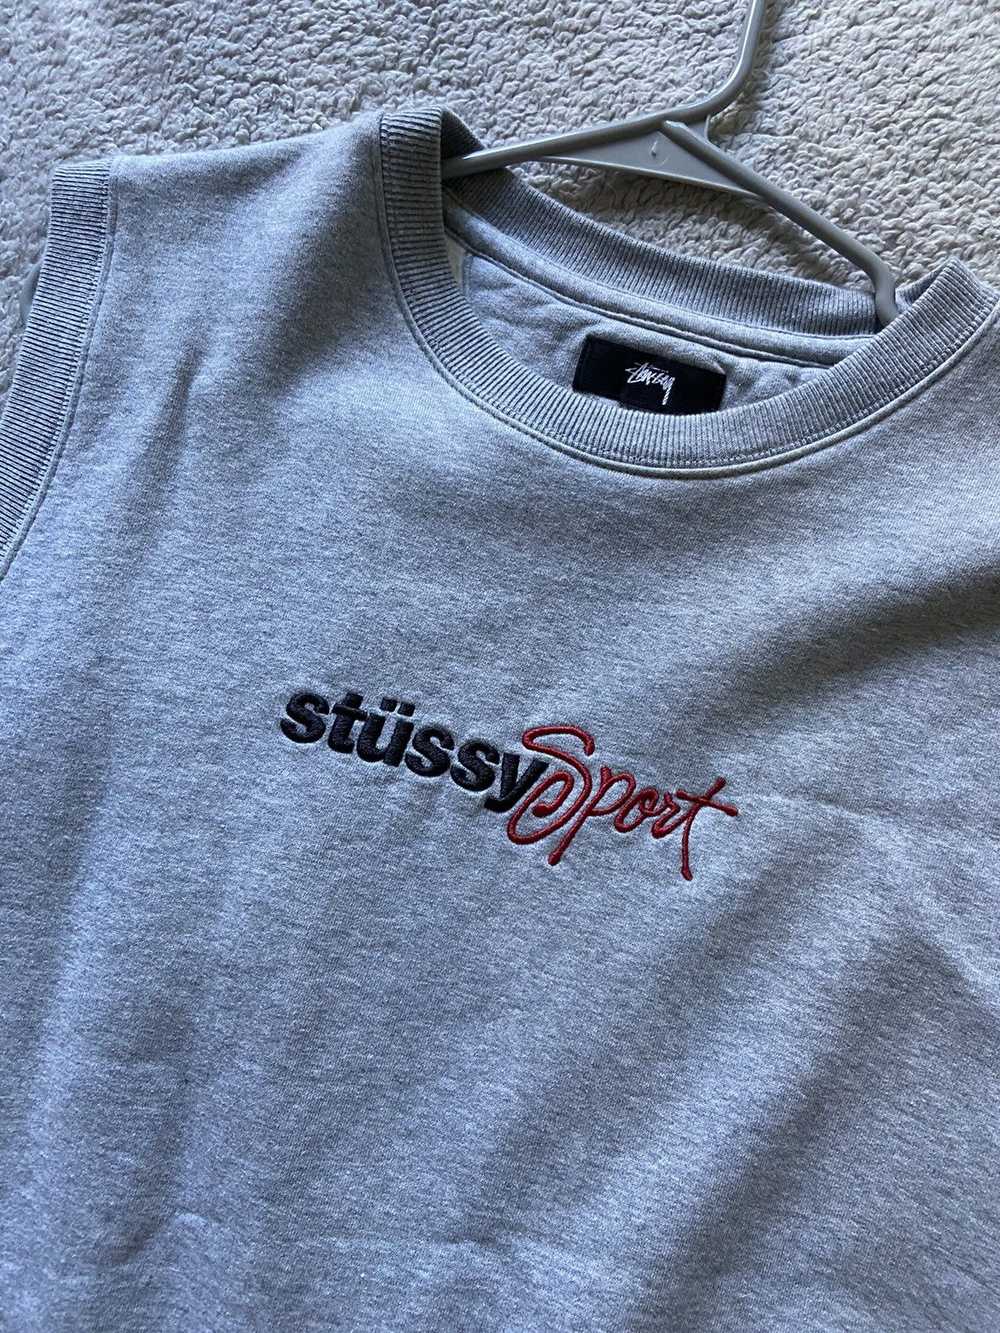 Stussy Stüssy Sport x Sweater Vest - image 2